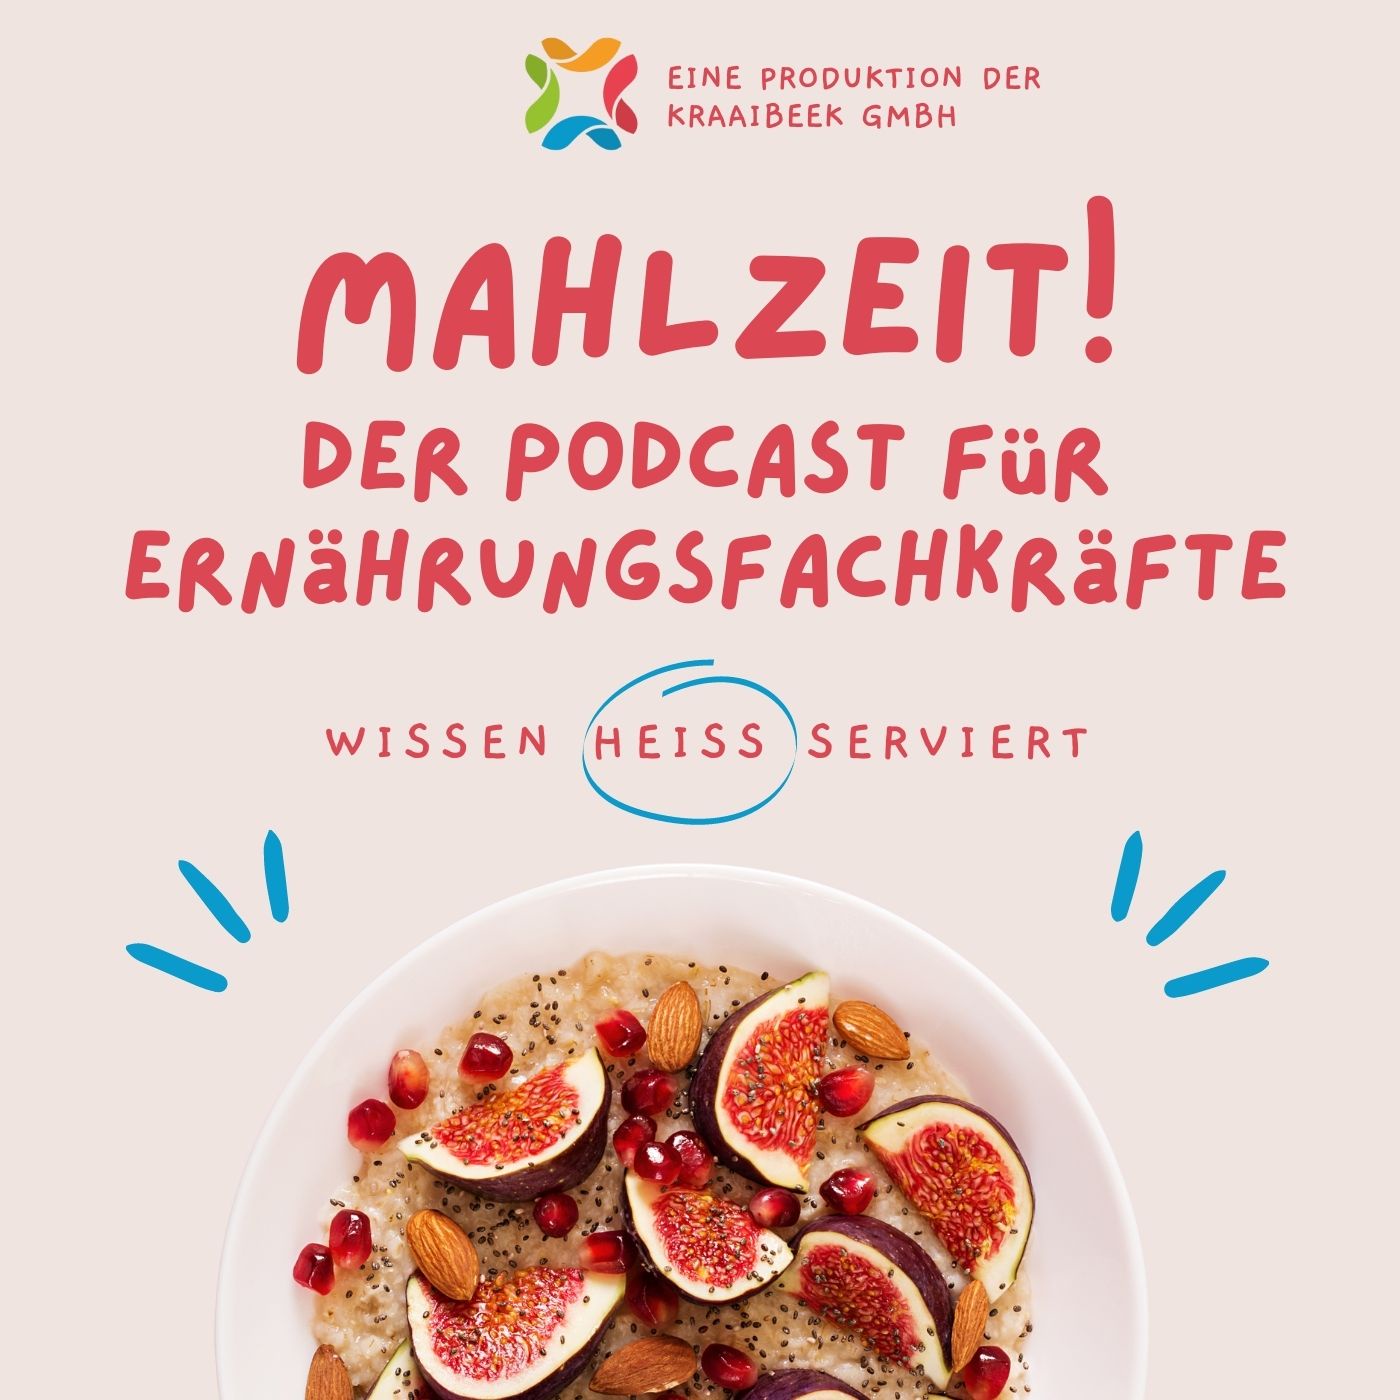 Mahlzeit! Der Podcast für Ernährungsfachkräfte